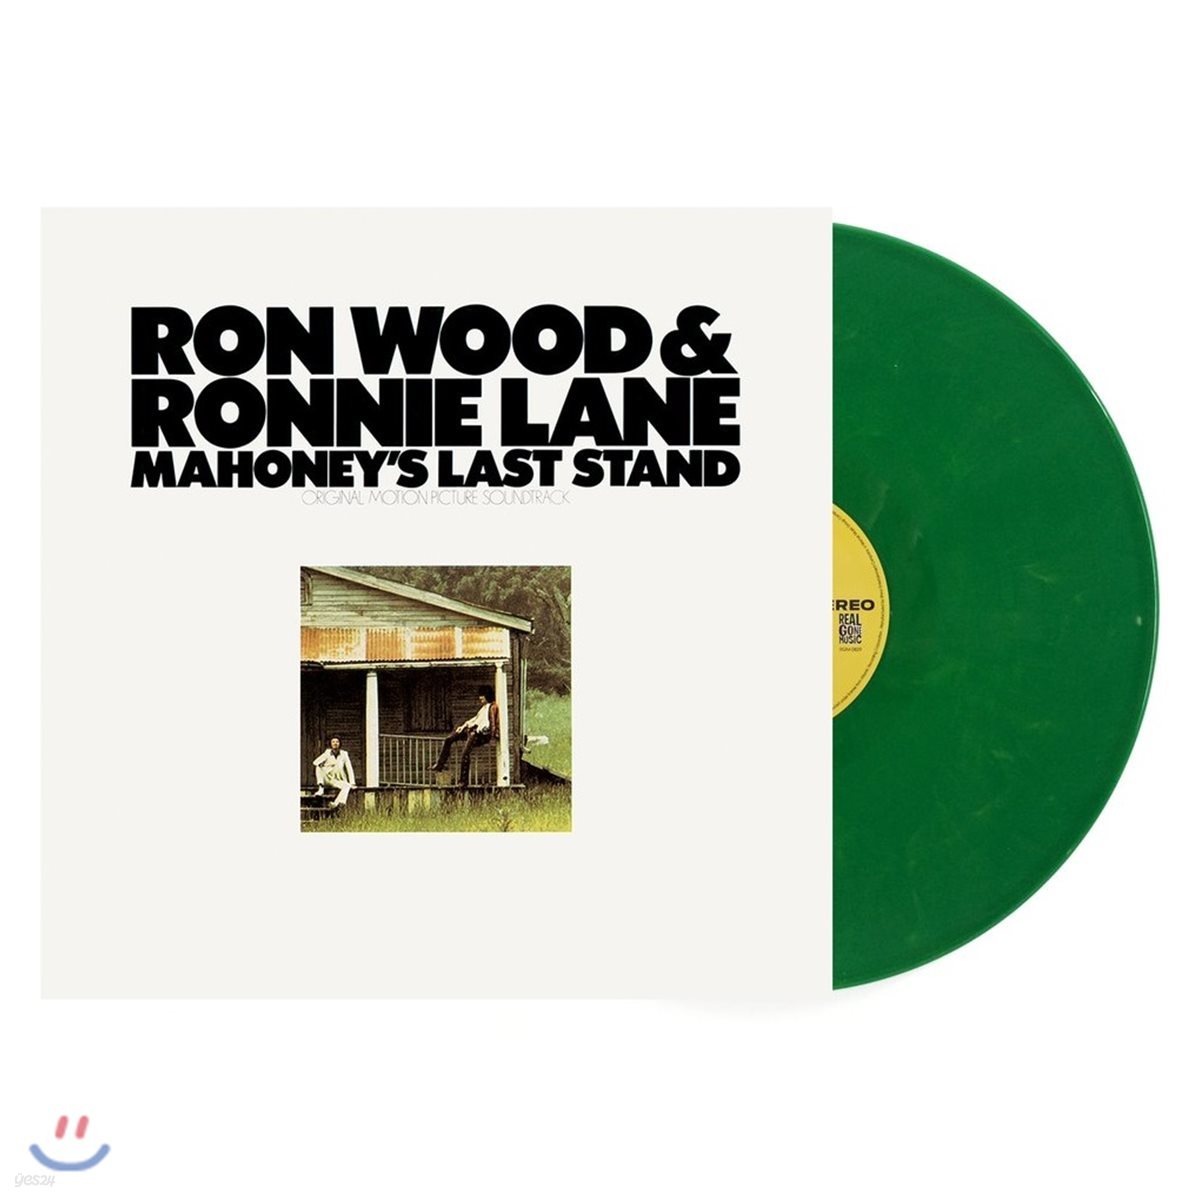 마호니의 라스트 스탠드 영화음악 (Mahoney's Last Stand OST by Ron Wood & Ronnie Lane) [그린 컬러 LP]